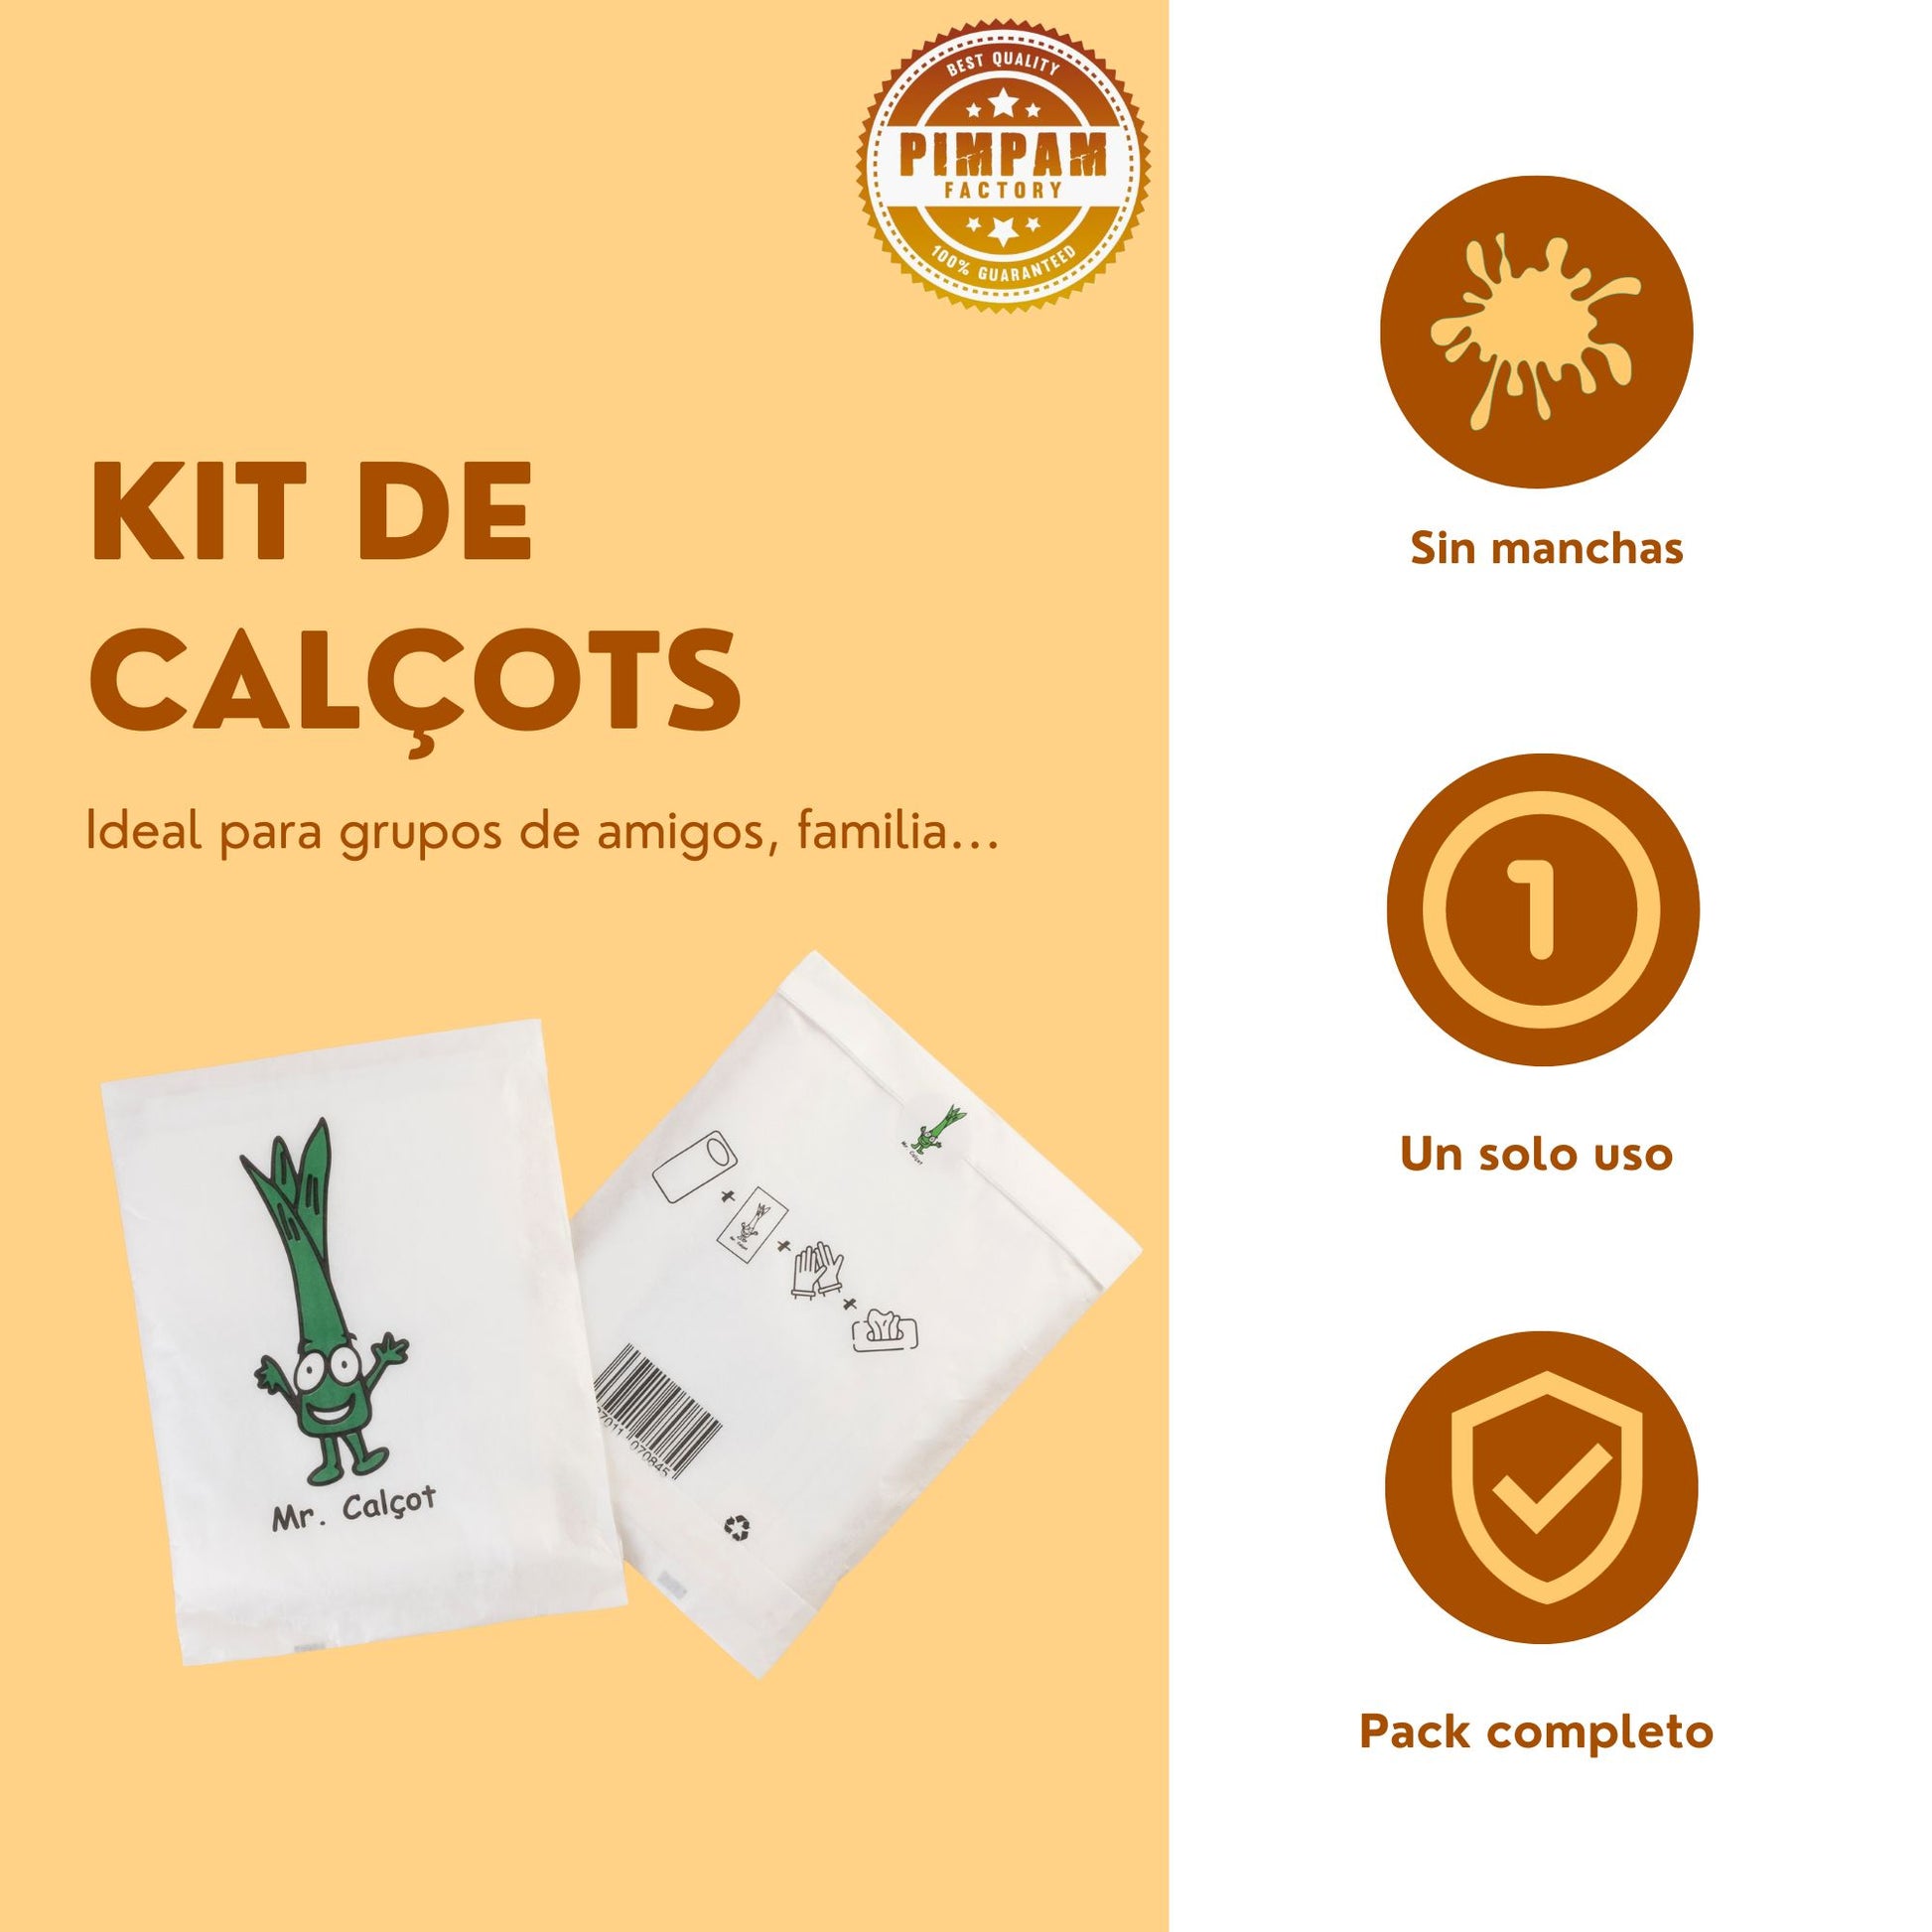 PimPam Factory - Kit Calçots - Babero Desechable Impermeable +